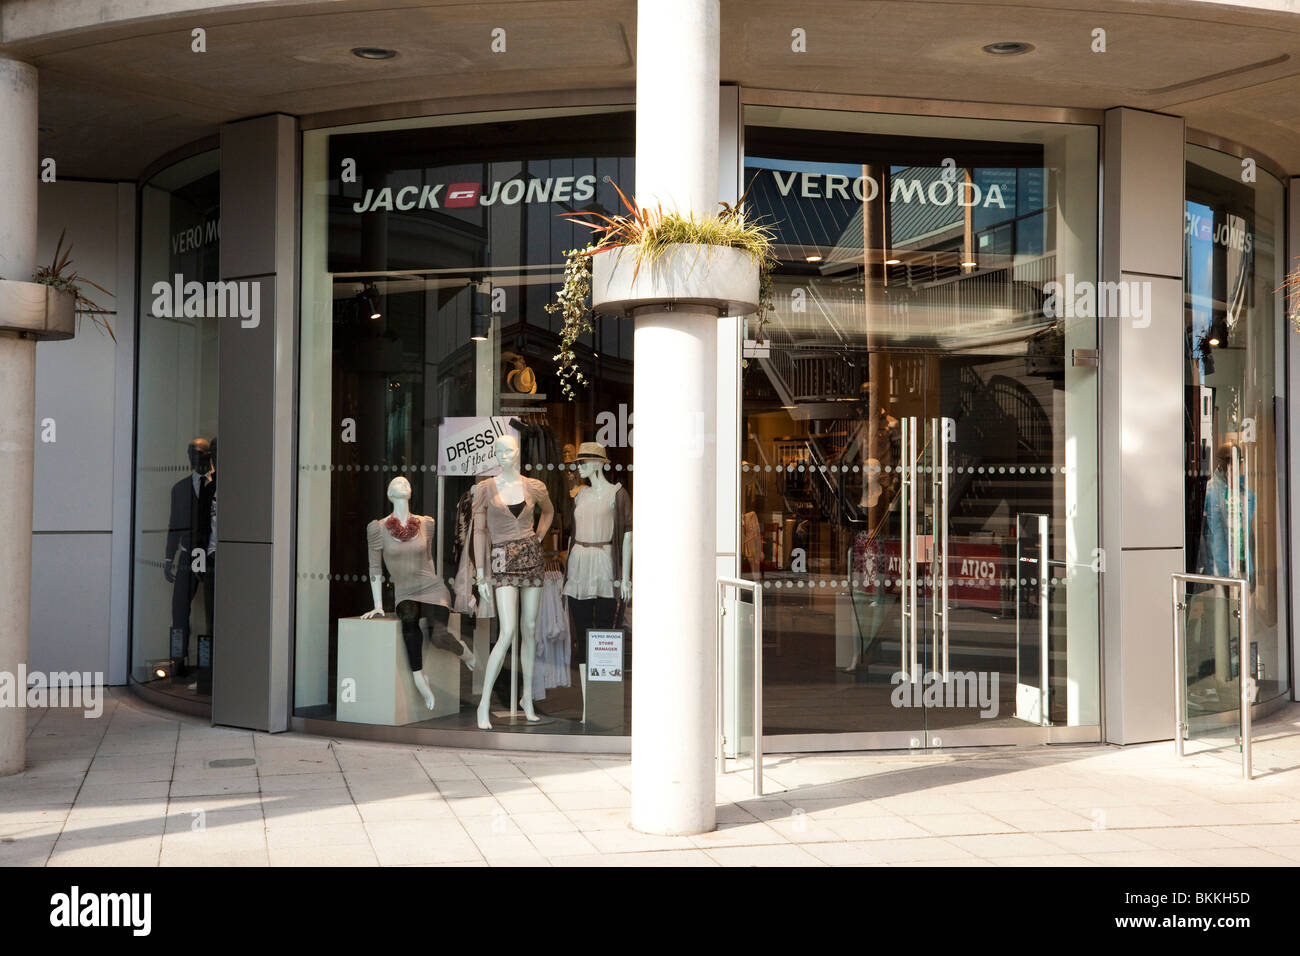 maak het plat Ongrijpbaar kristal Jack Jones / Vero Moda clothing store Stock Photo - Alamy